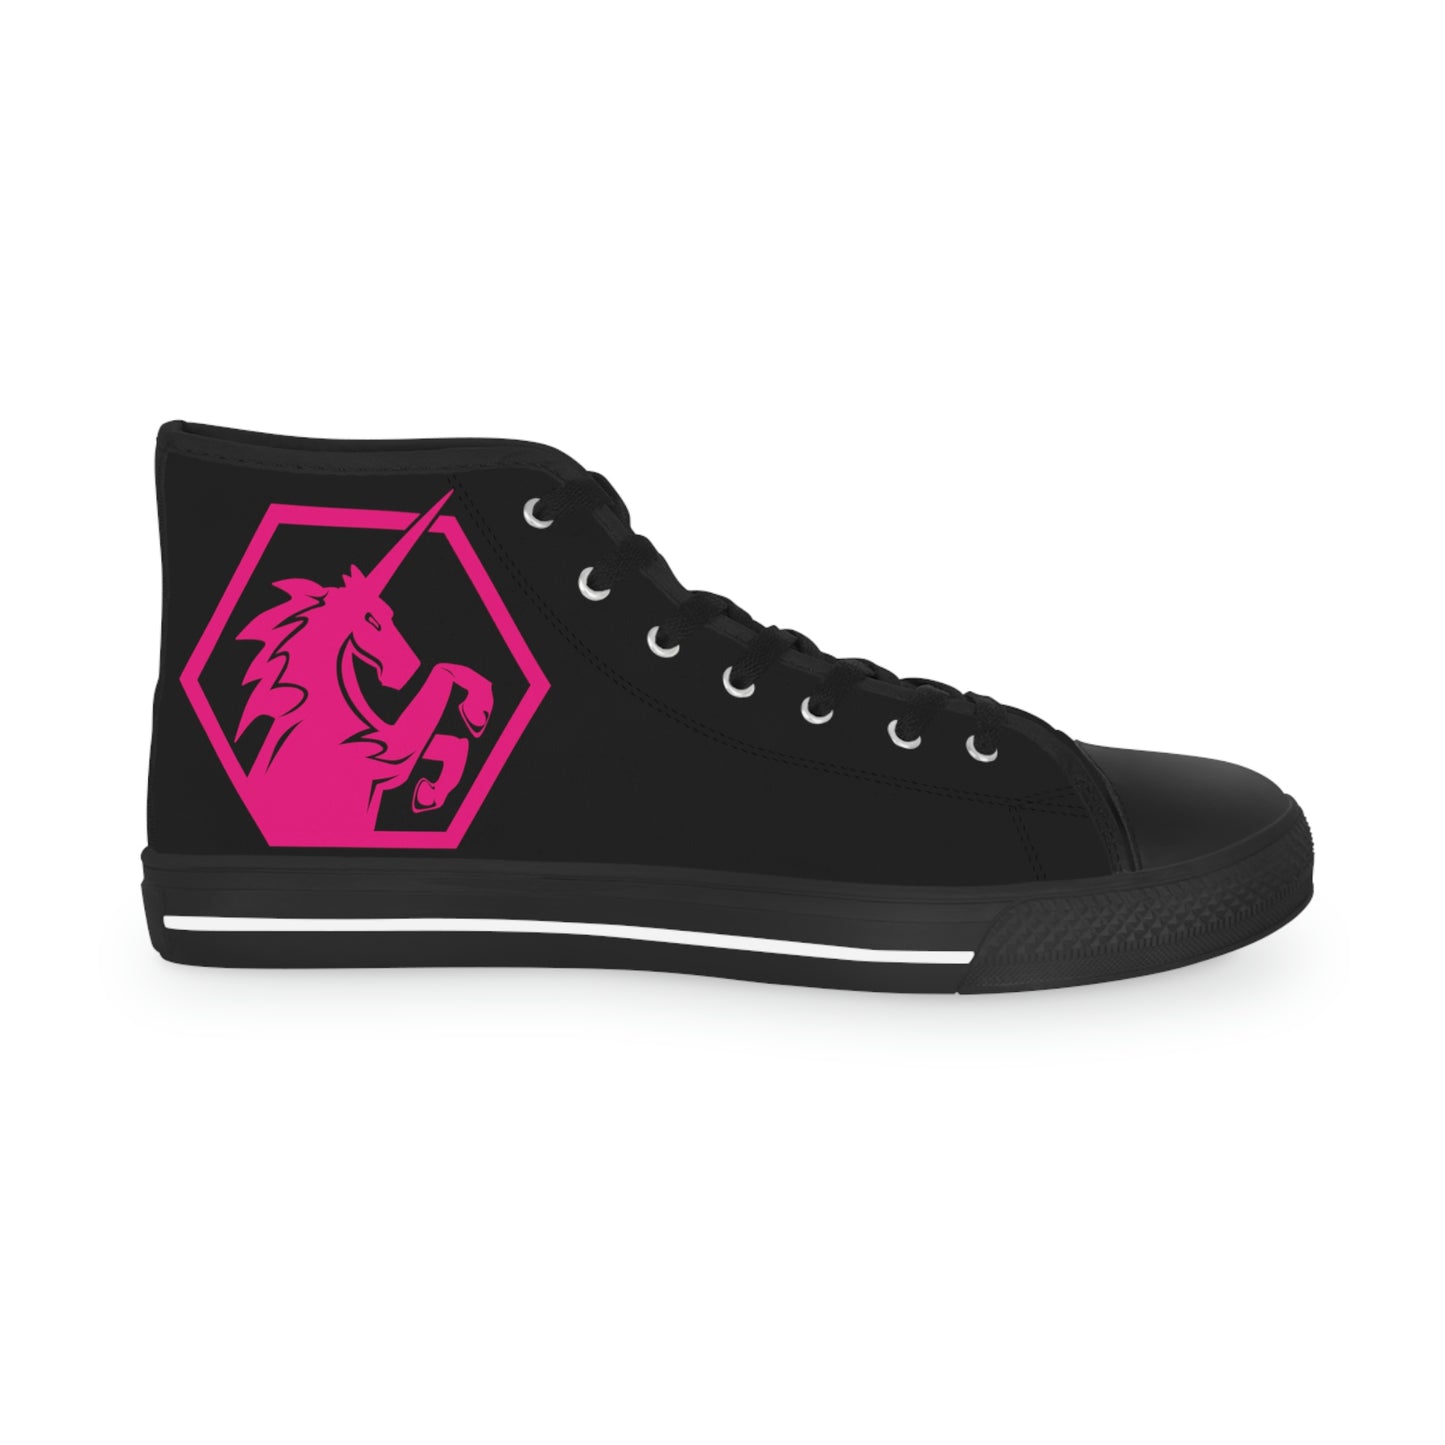 Black w/Pink High Top Sneakers